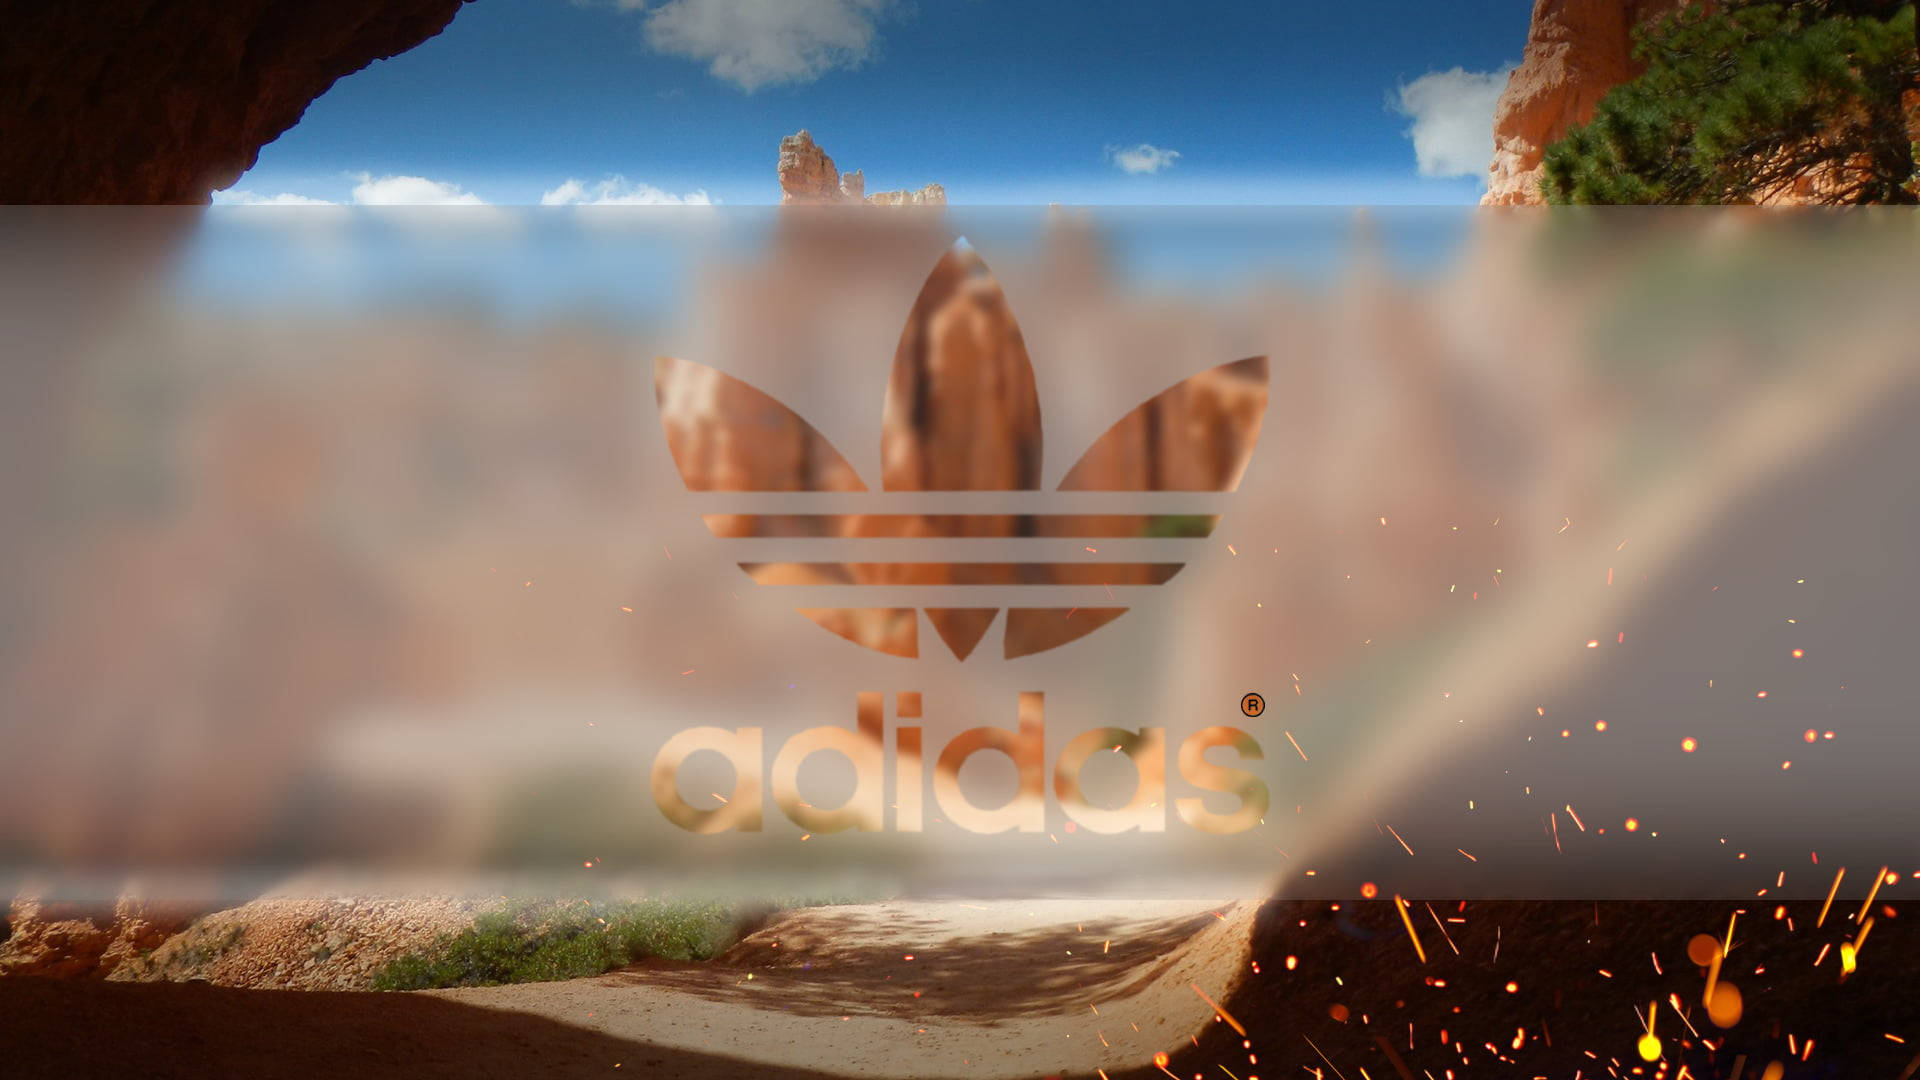 Adidas In Desert Art Background